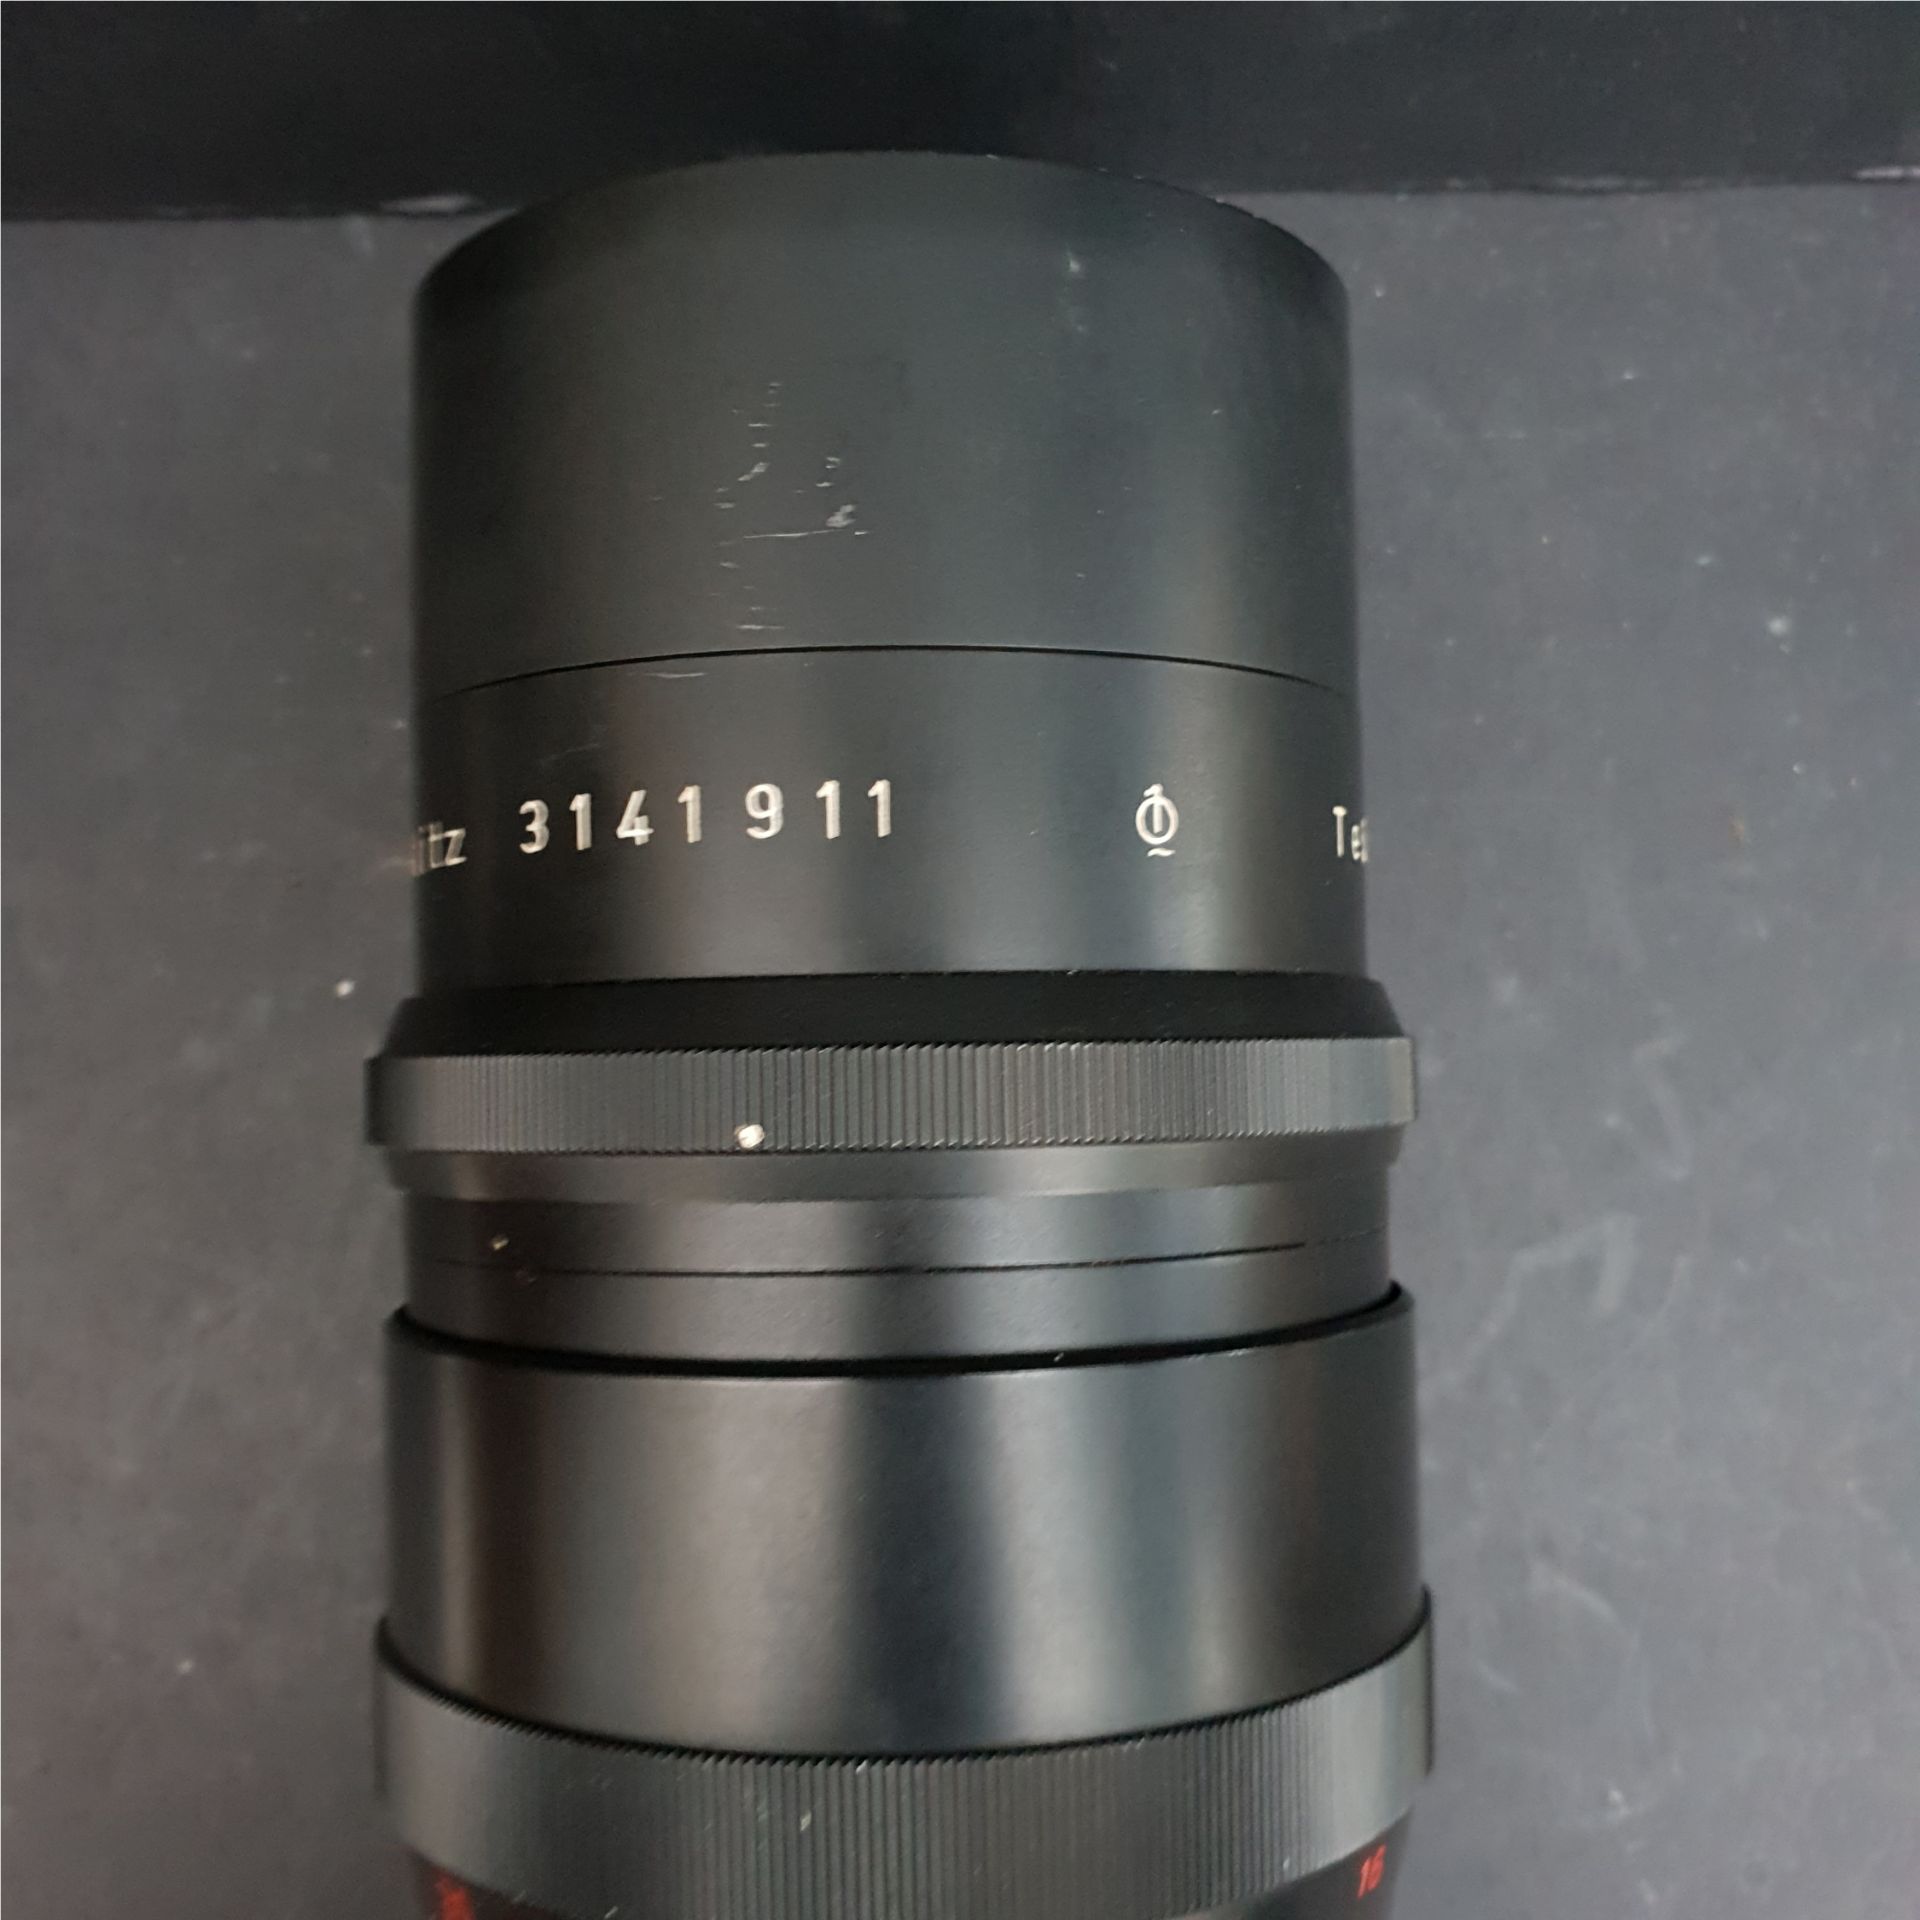 Meyer Optik Telemegor 4.5 / 300 Camera Lens & Leather Case - Image 3 of 5